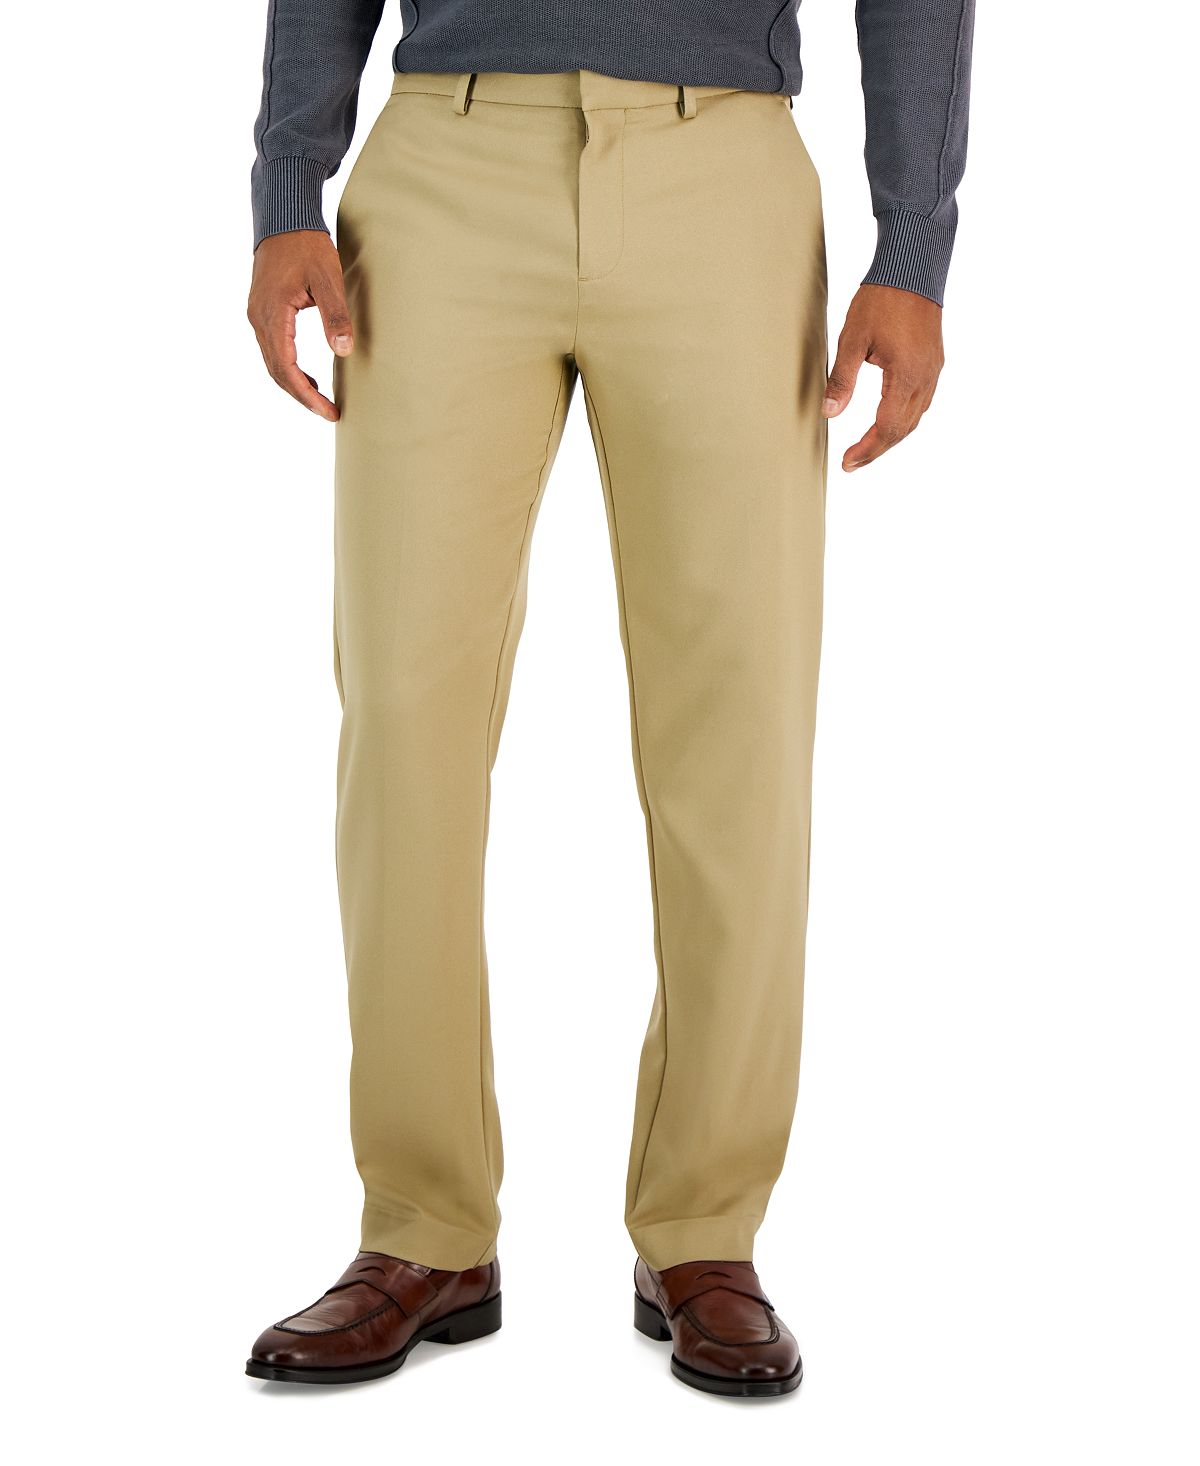 Мужские брюки из твила modern-fit Perry Ellis Portfolio